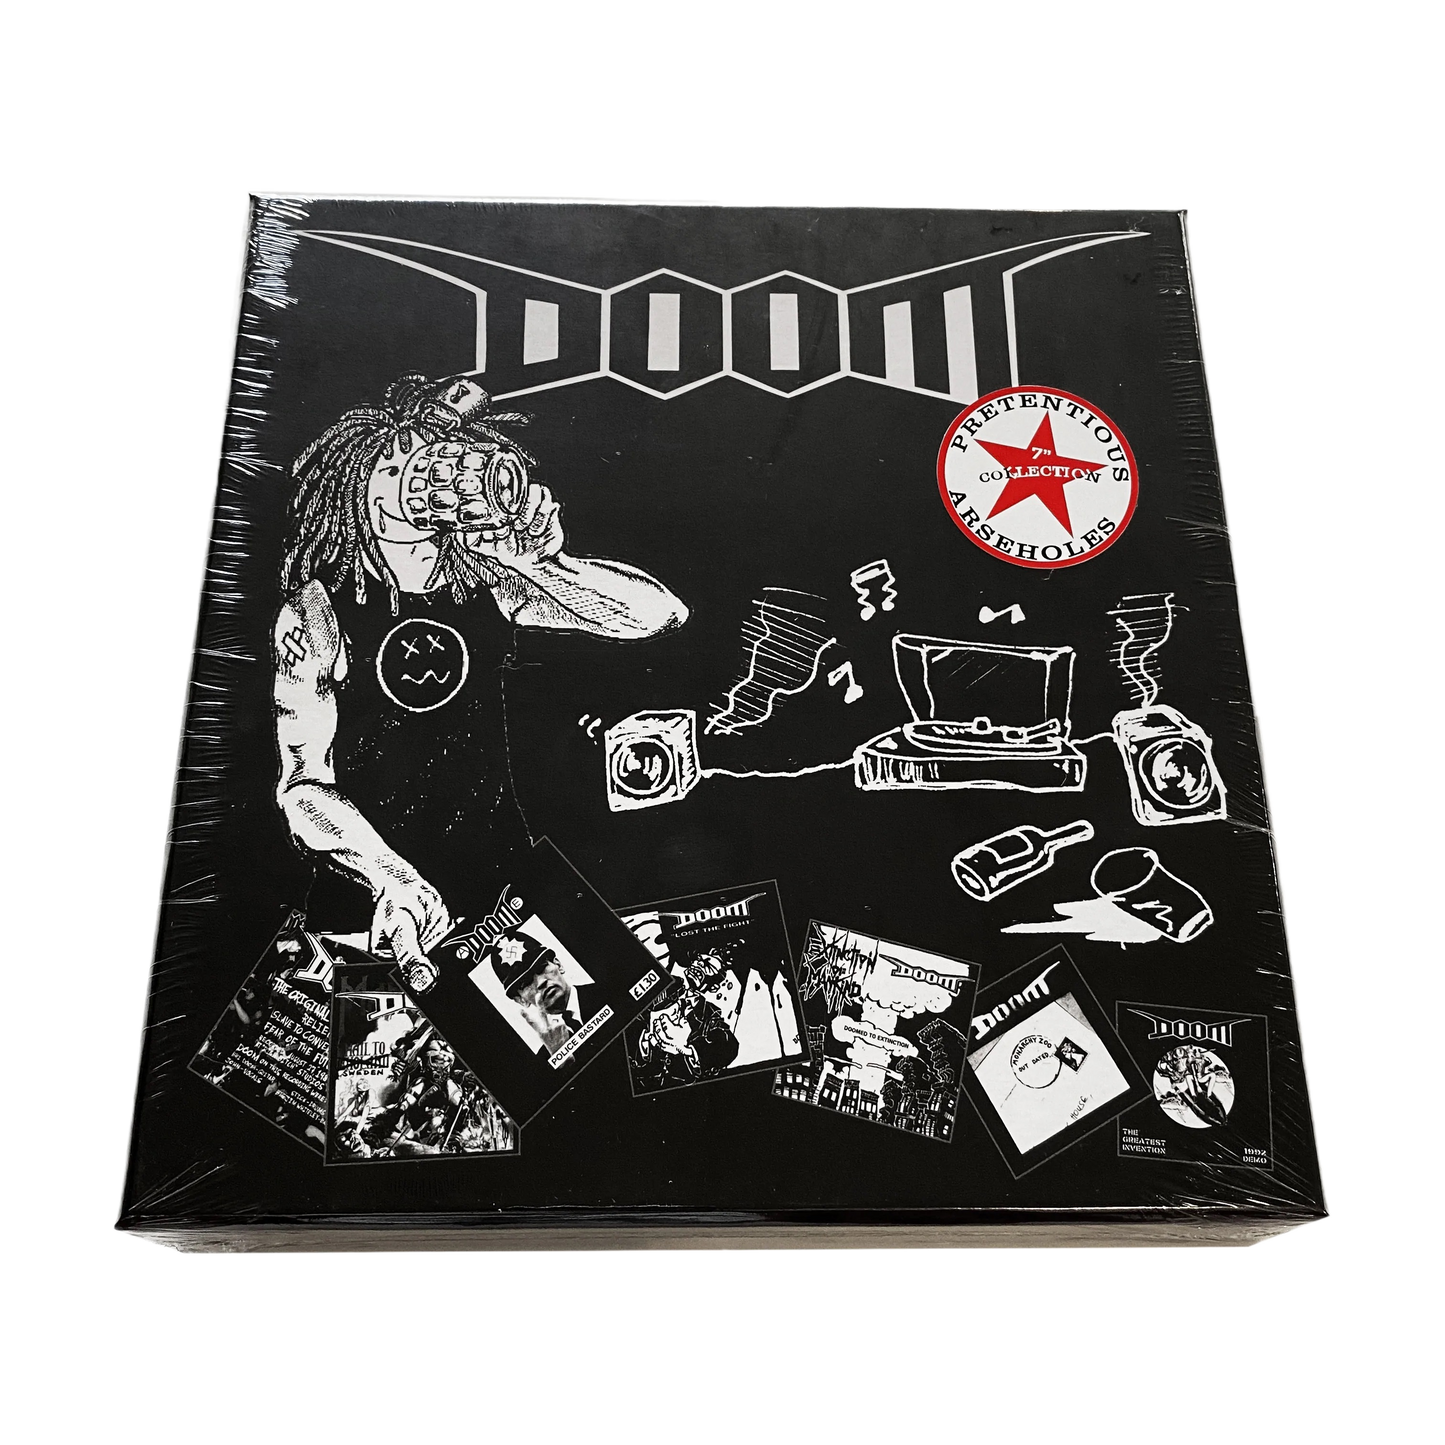 DOOM‎ – Pretentious Arseholes 7" Collection Box Set